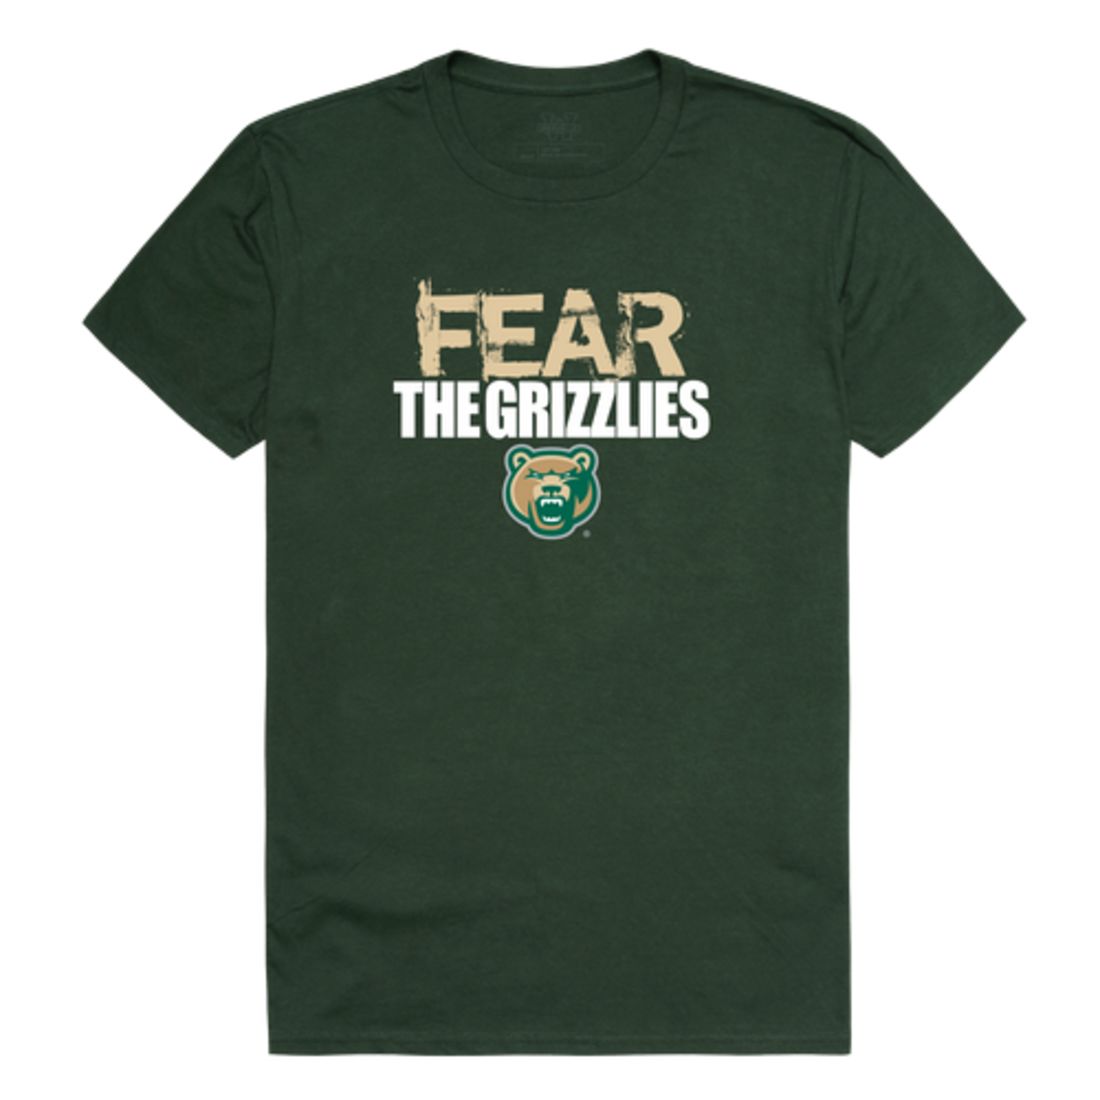 Fear The Georgia Gwinnett College Grizzlies T-Shirt Tee